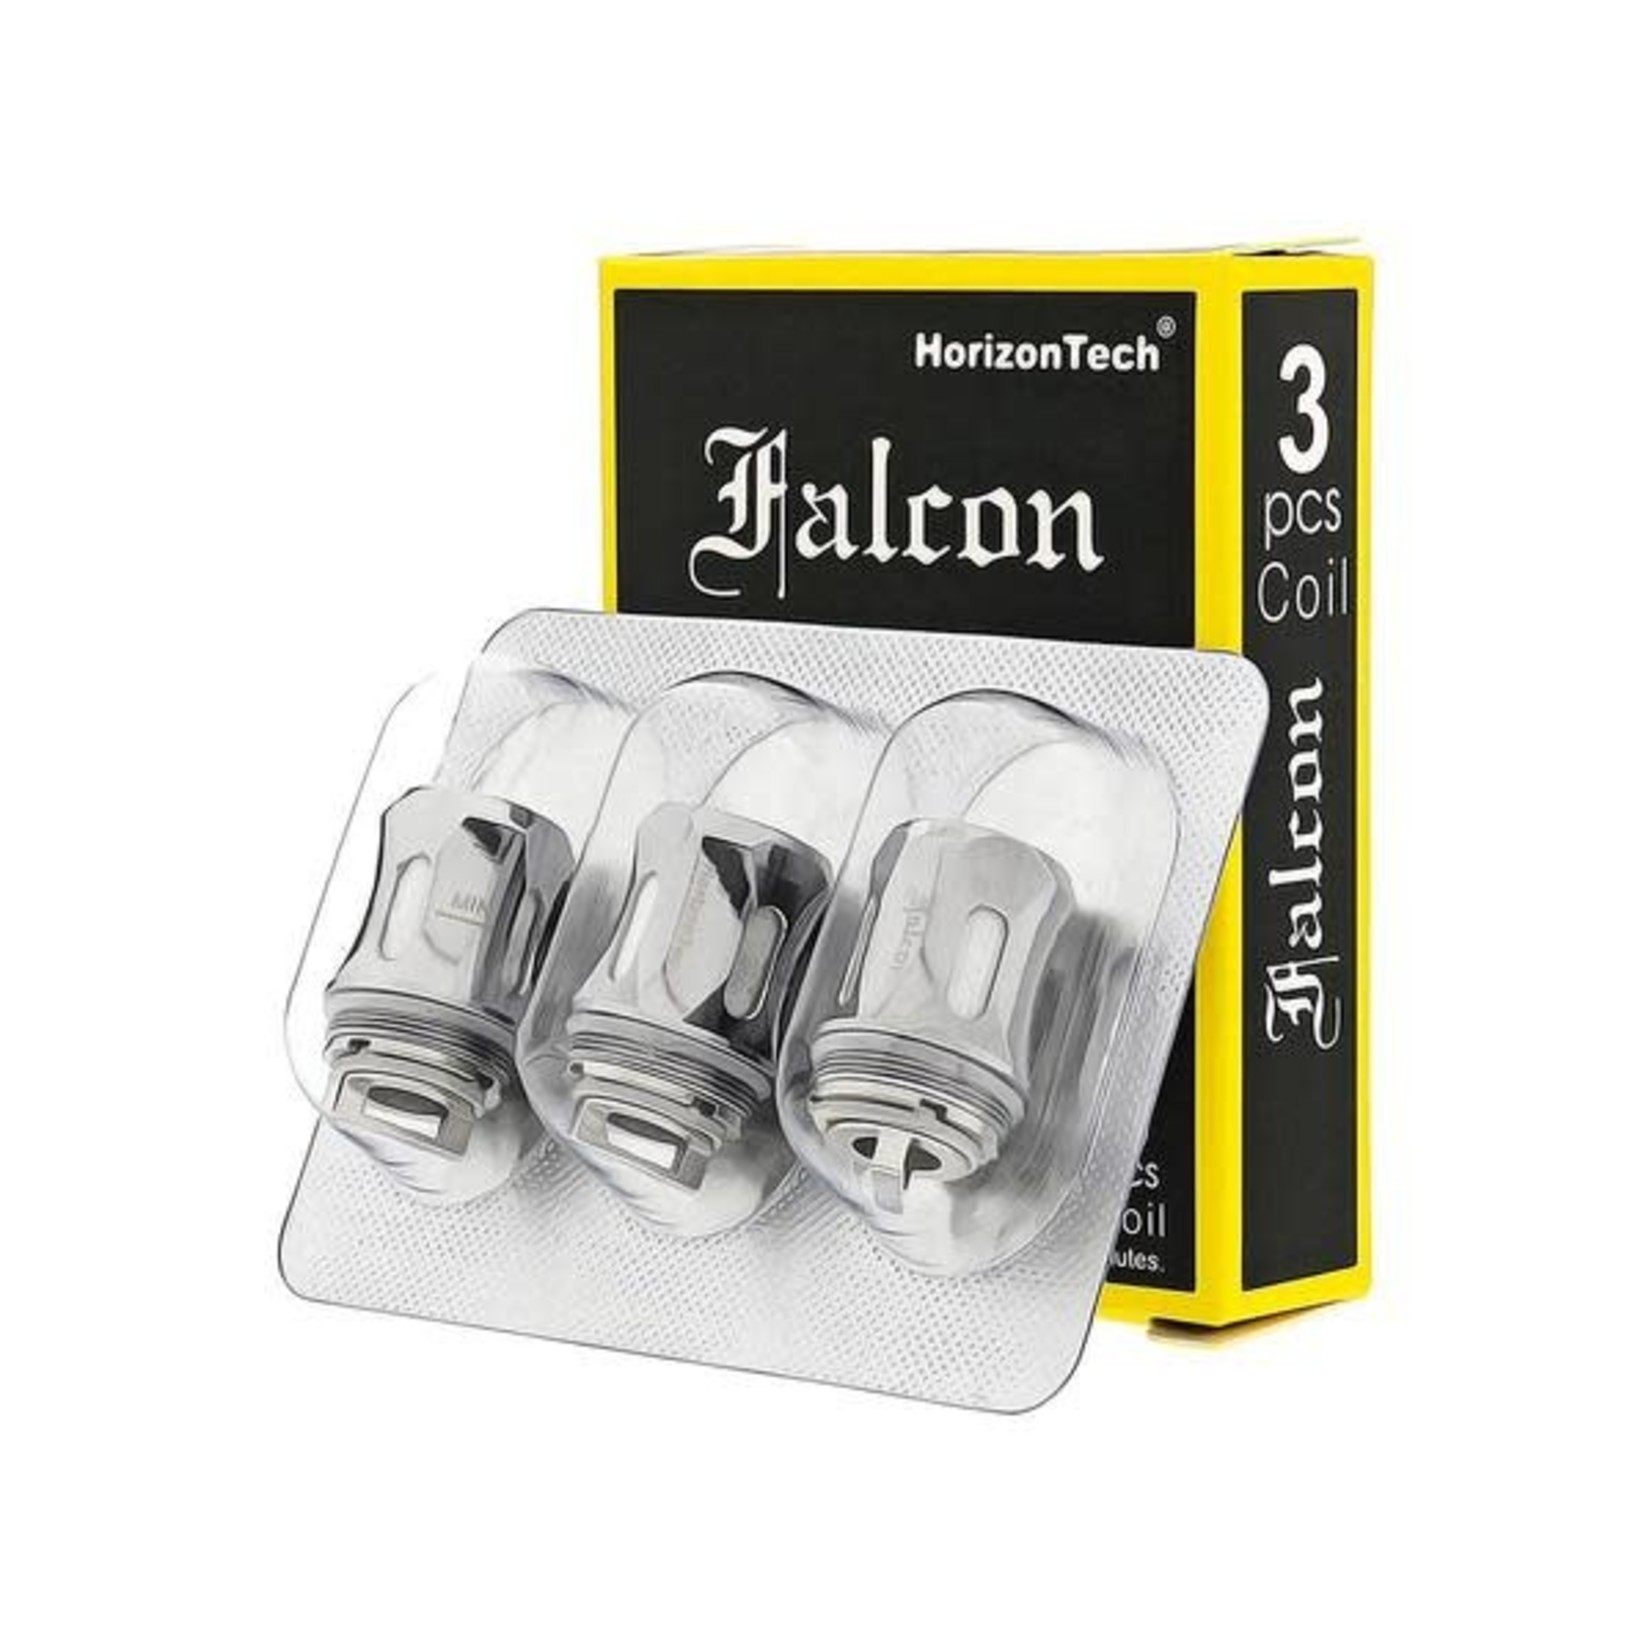 HorizonTech Falcon Coil (Box of 3)